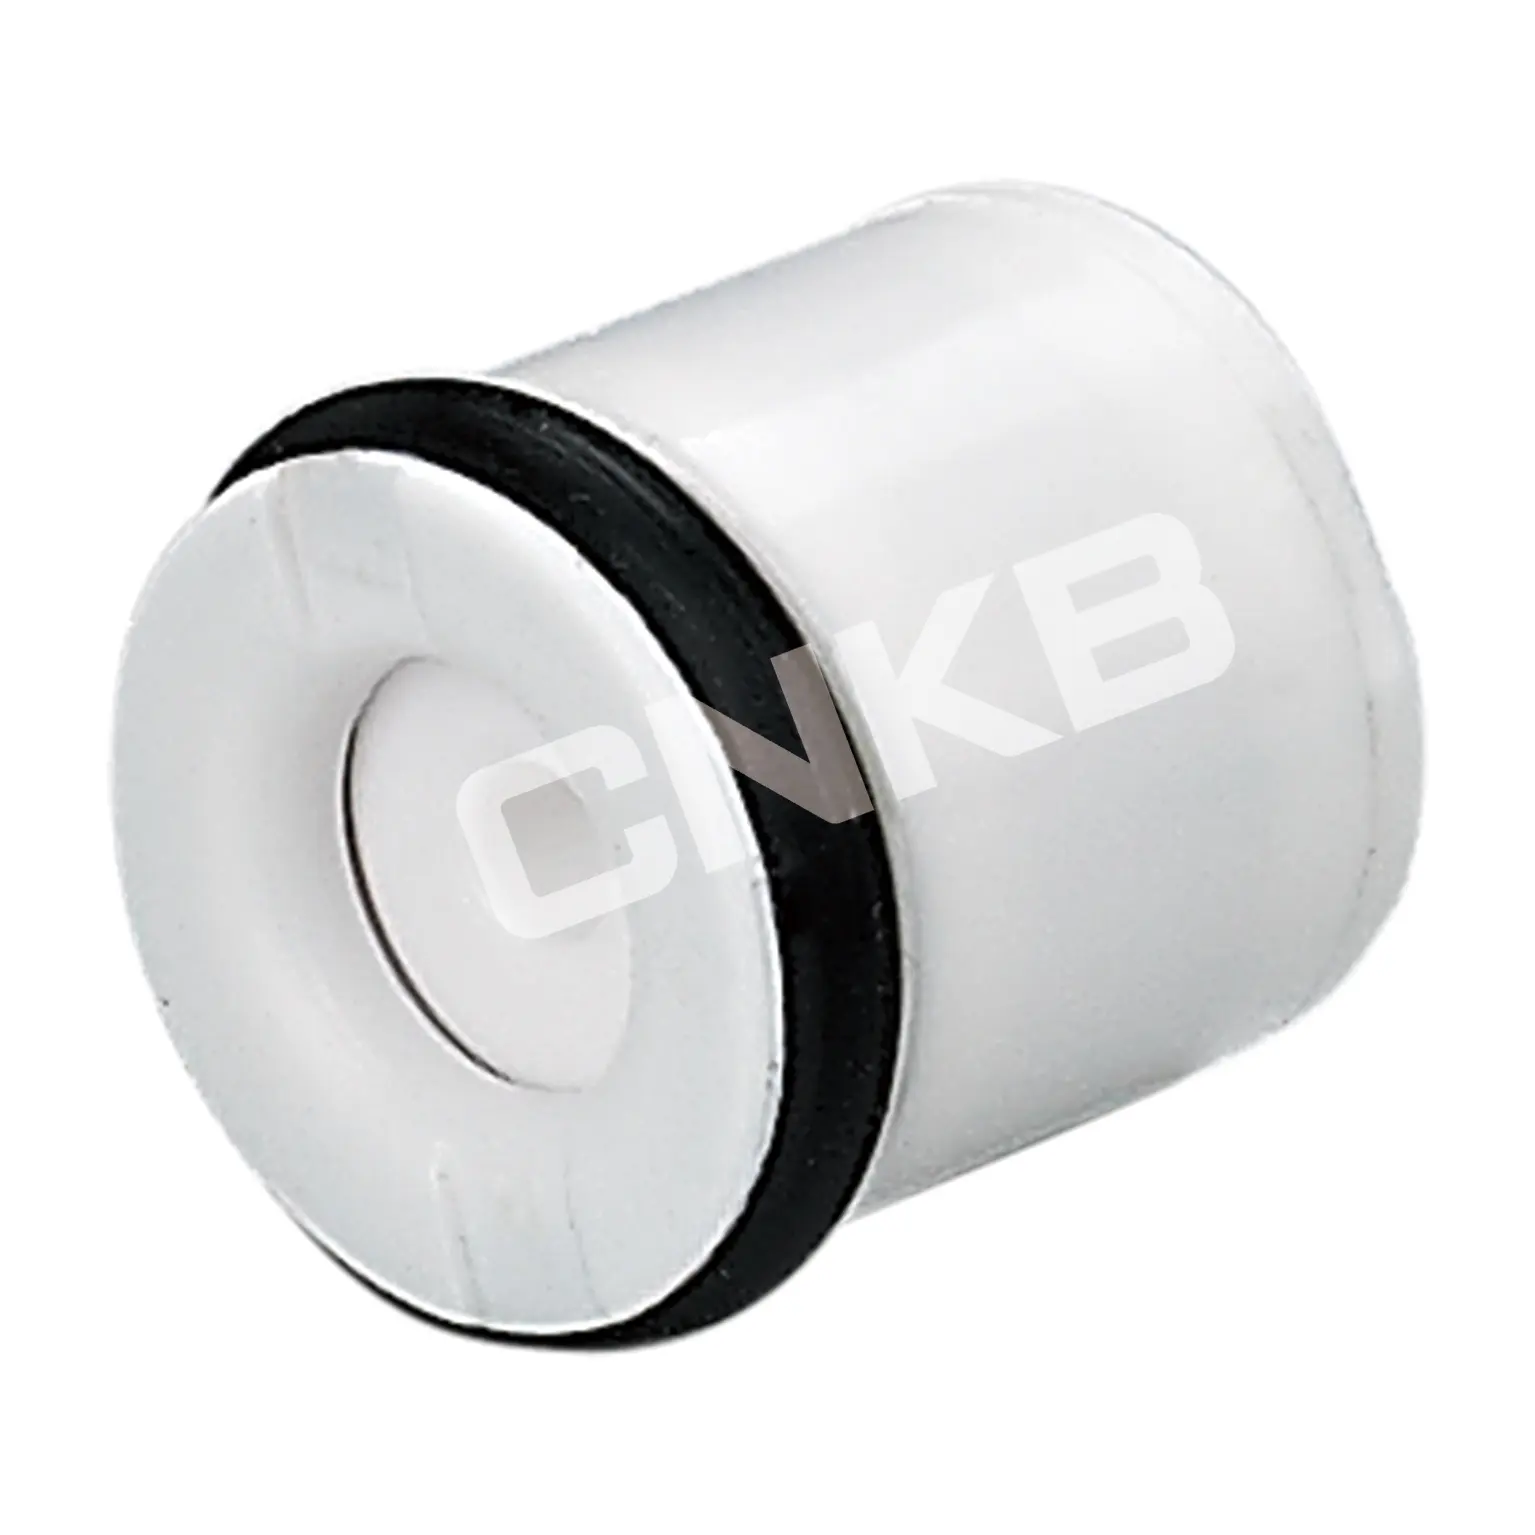 CNKB-صمام فحص من النوع المدمج في الماء البلاستيكي بسعر المصنع ، DN10 DN14